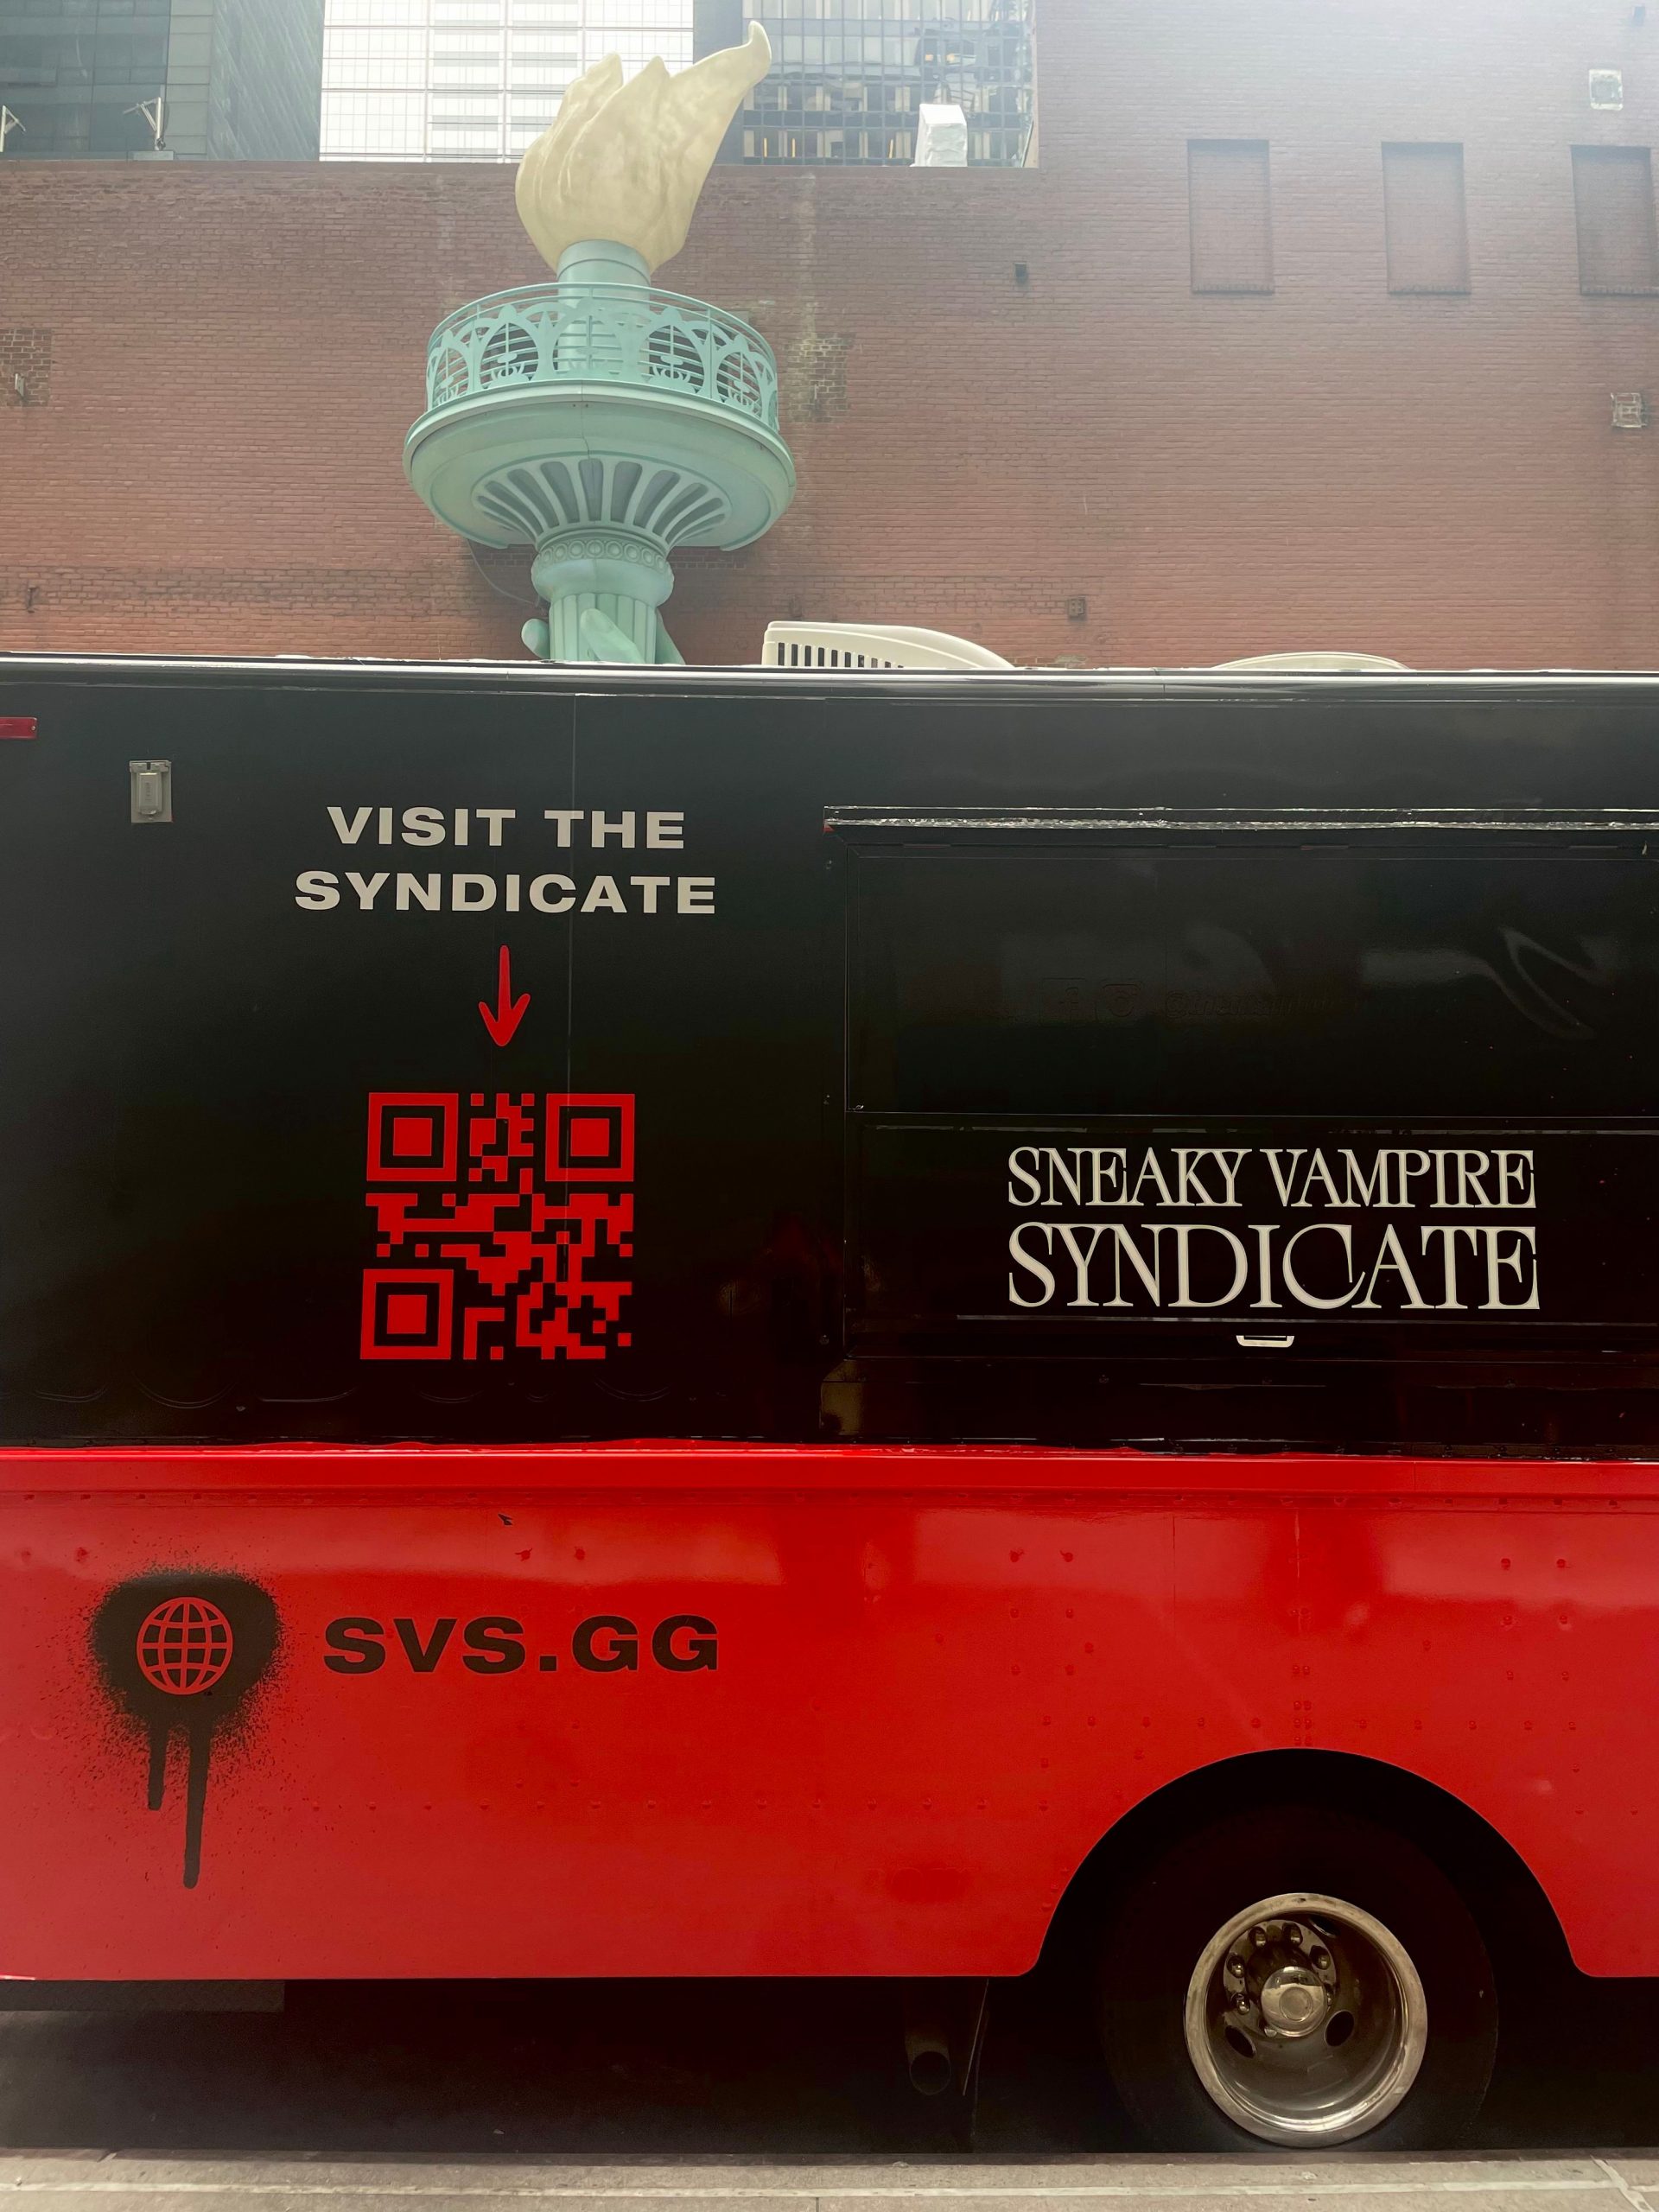 Sneaky Vampire Syndicate food truck.